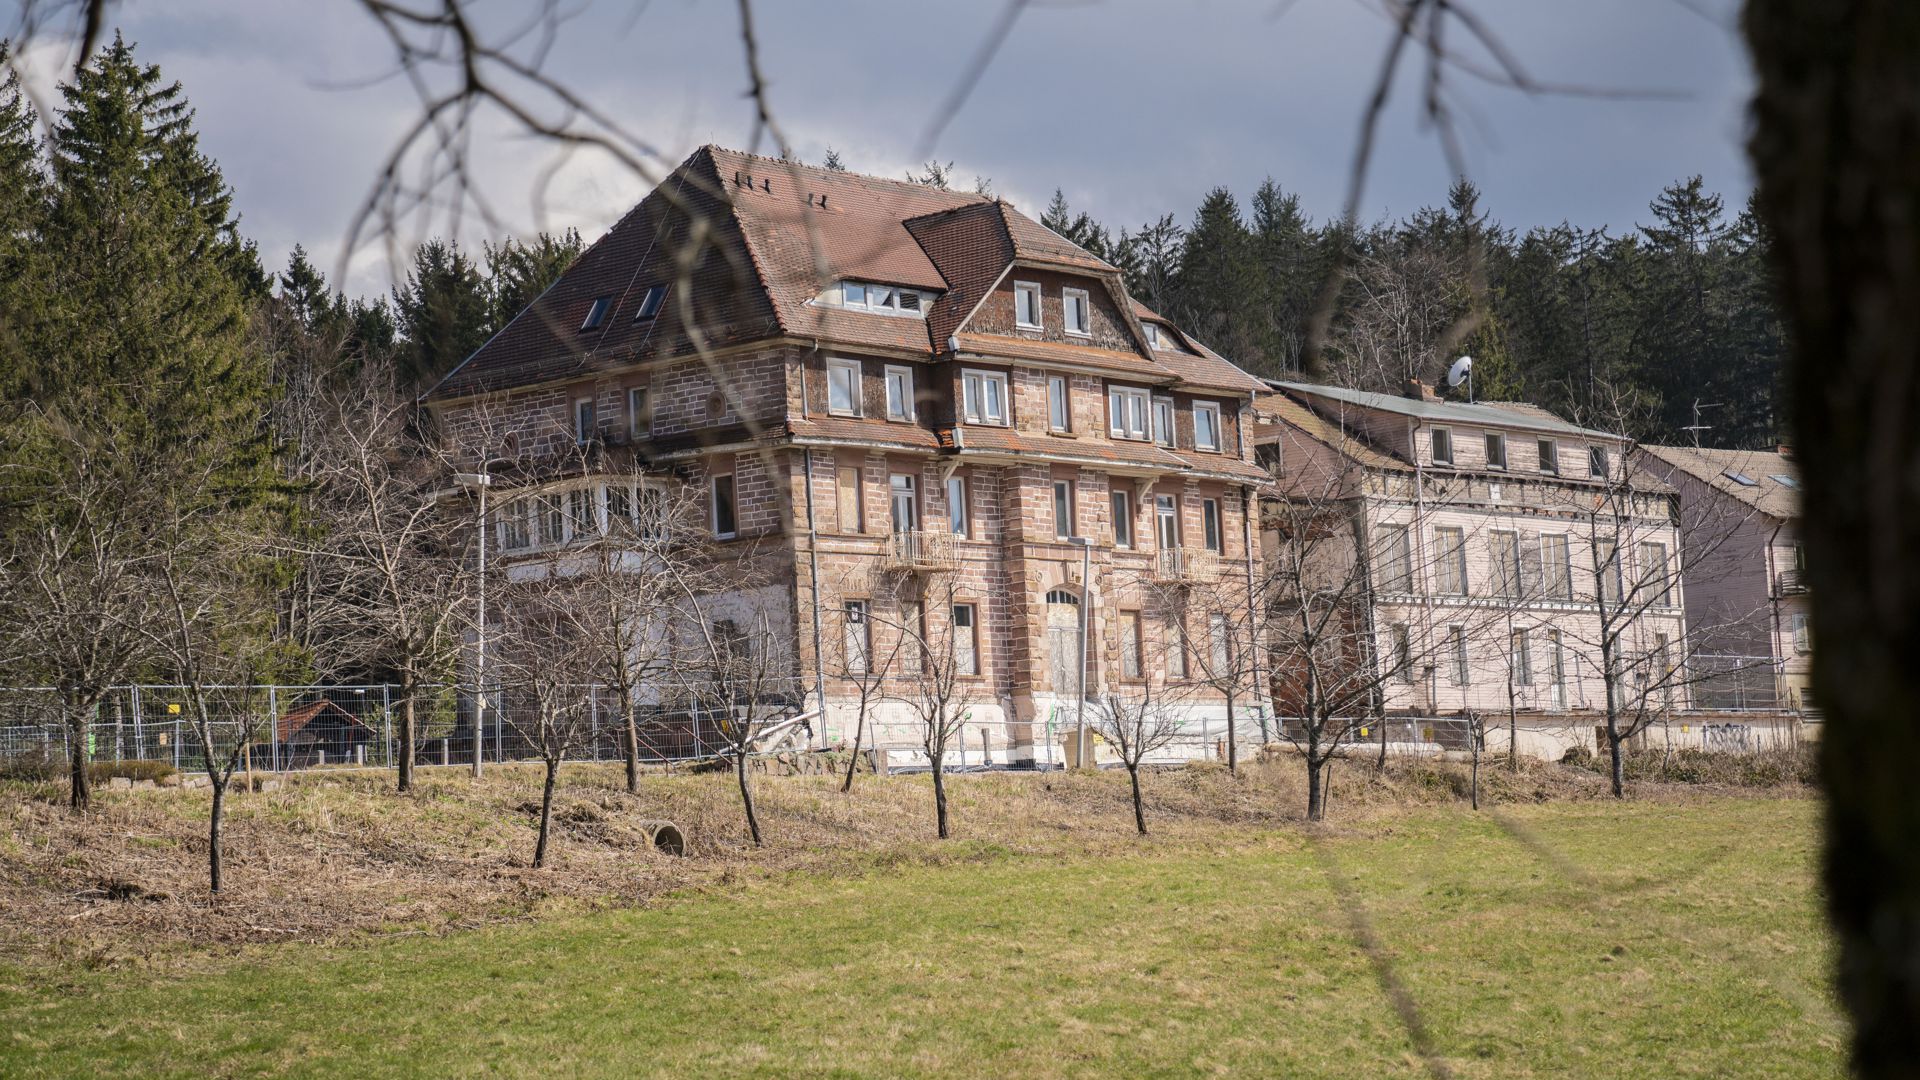 1983 musste die Schwarzwald-Sanatorien GmbH Konkurs anmelden, das war das Ende der Klinikgeschichte auf dem Breitenbrunnen.